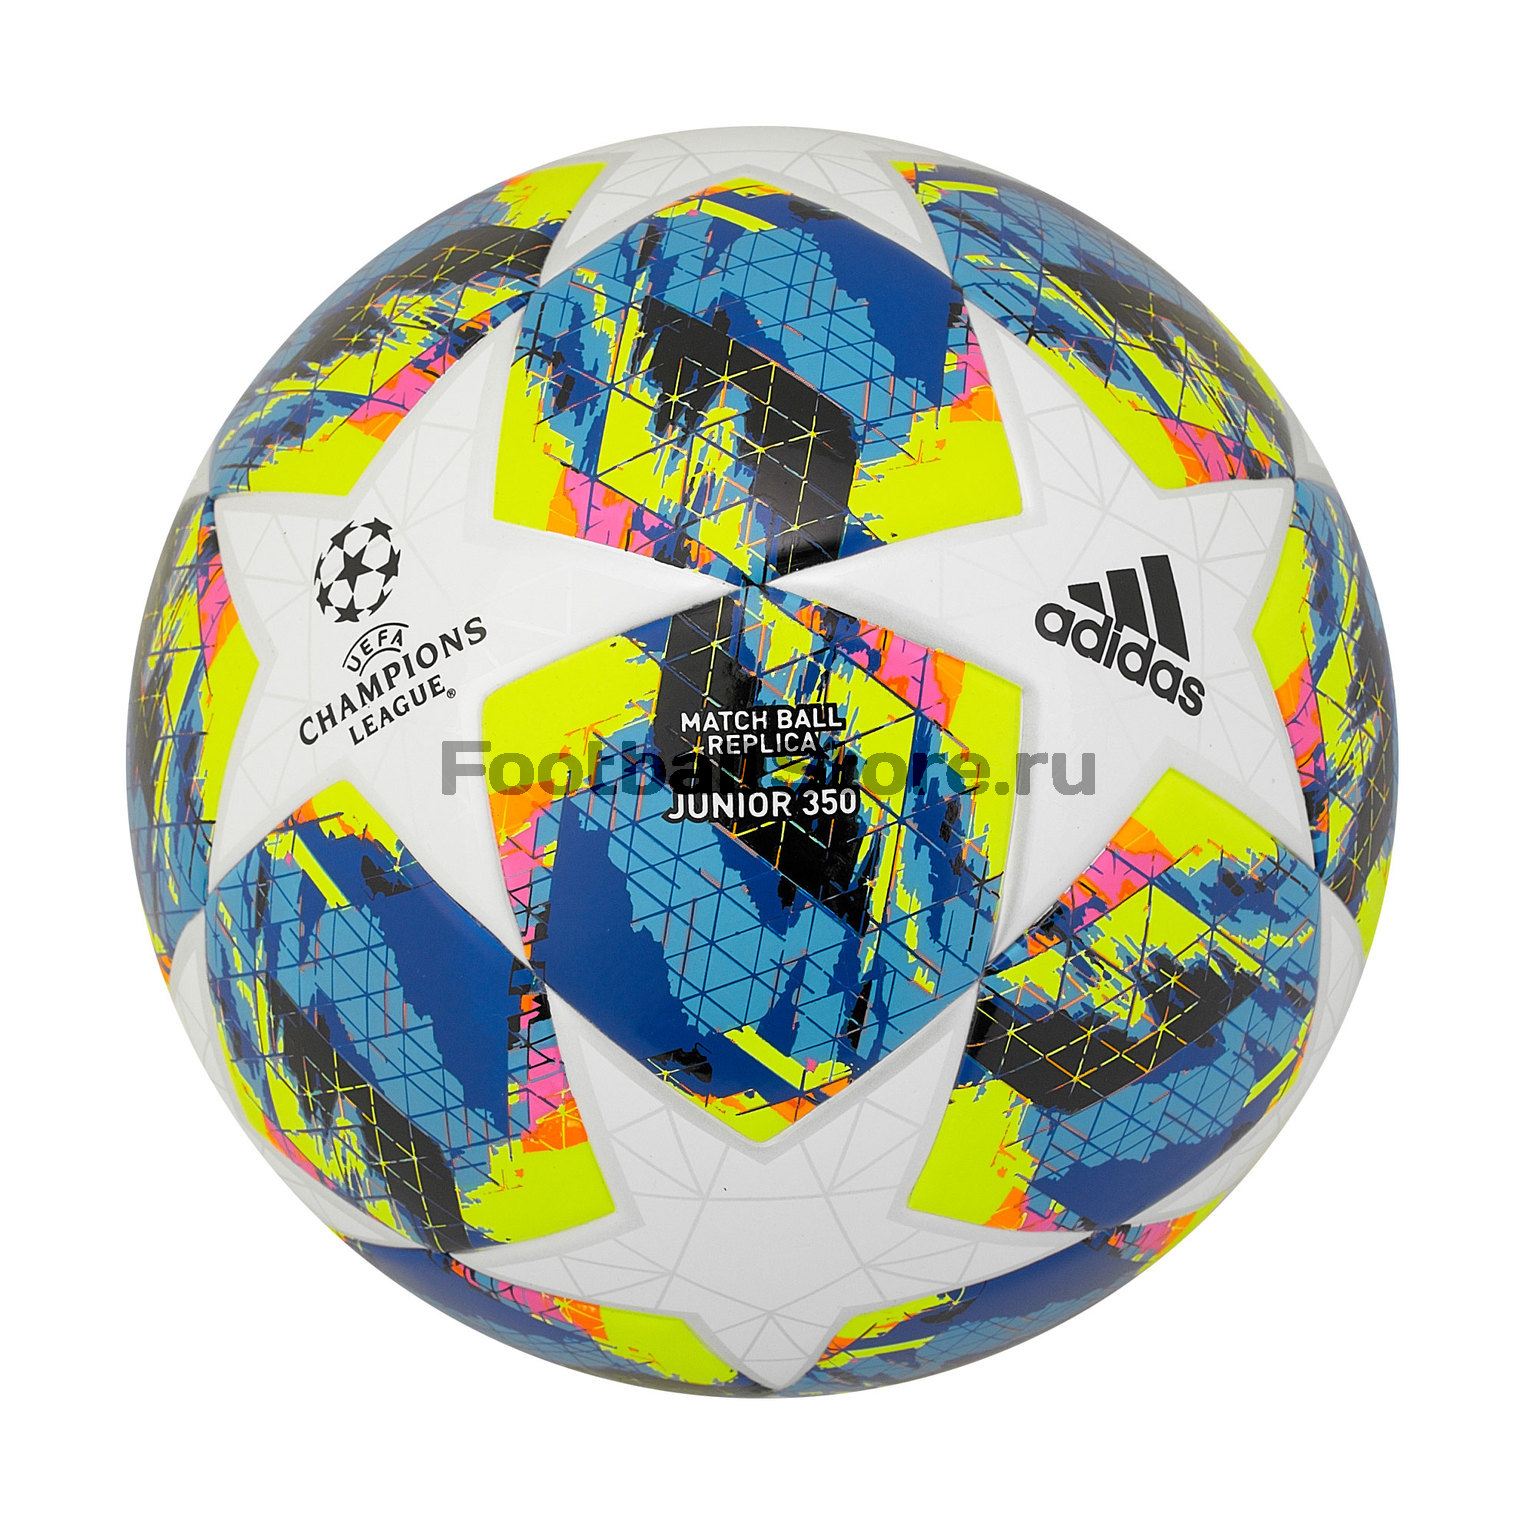 Детский Футбольный мяч Adidas Finale J350 DY2550 – купить в интернет магазине цена, фото